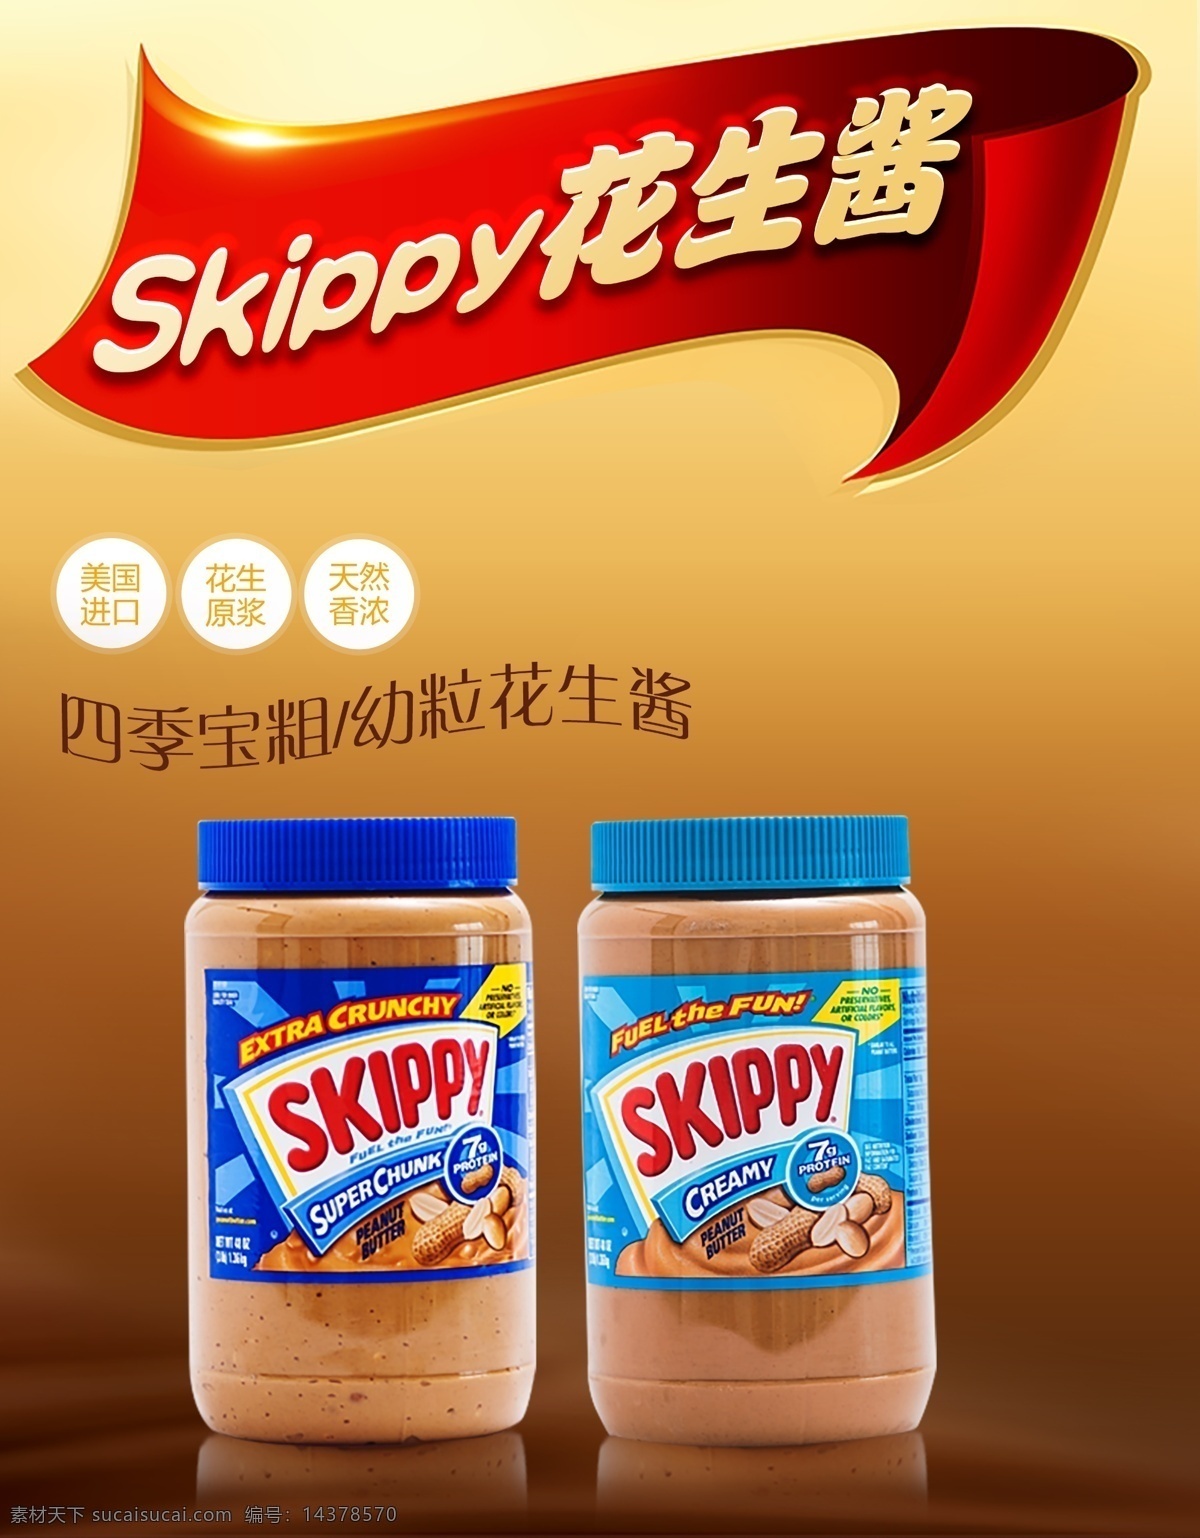 skippy 花生酱 巧克力背景 糖浆 进口调料 进口食品 宣传单 彩页 红色